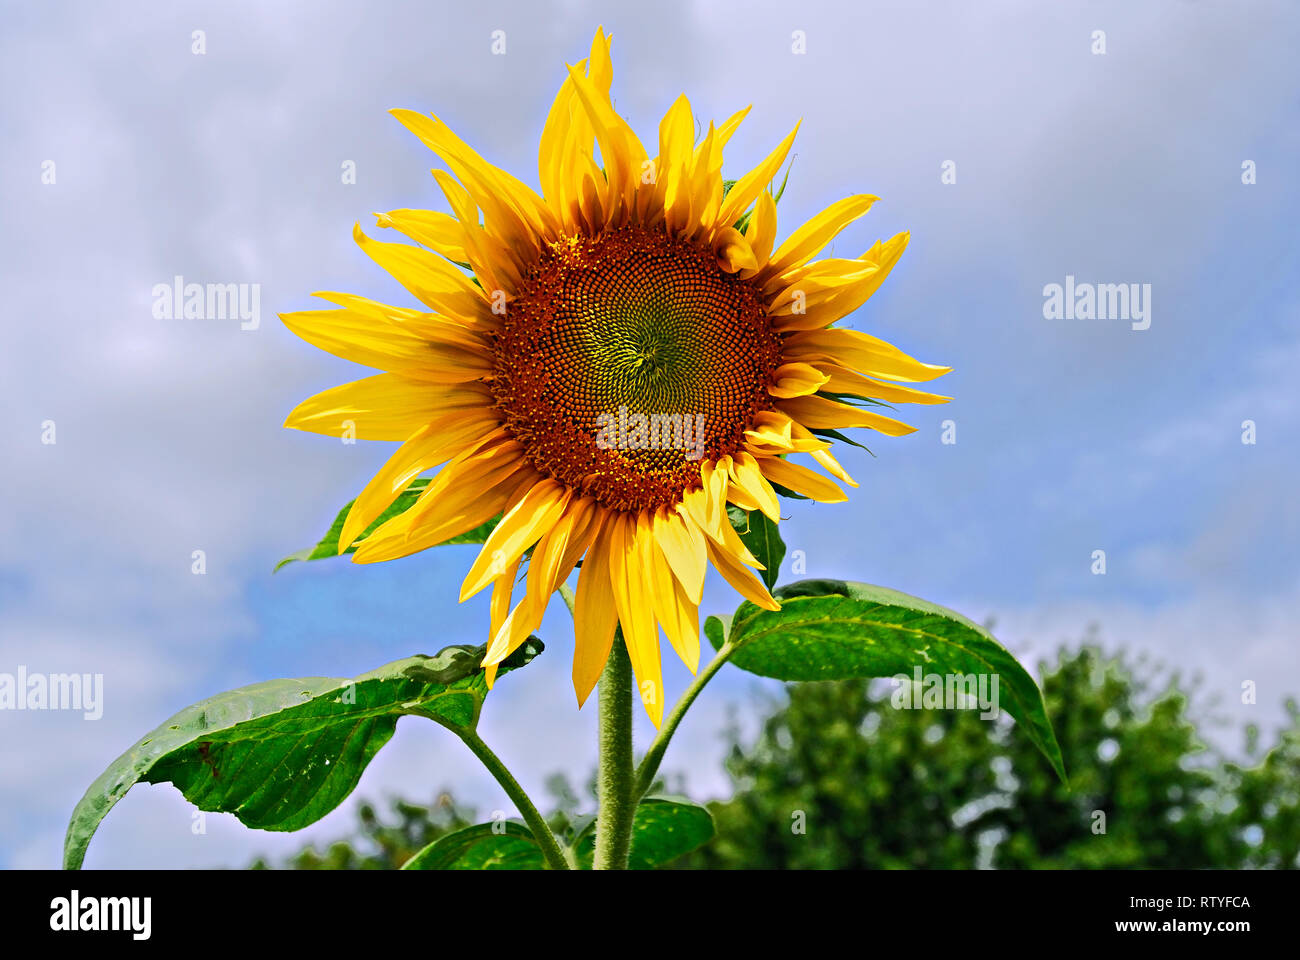 Eine ausgereifte Sonnenblume "Helianthus annuus" wachsenden Hoch gegen eine Wolke Himmel in einem Feld im Westen Kanada gefüllt. Stockfoto